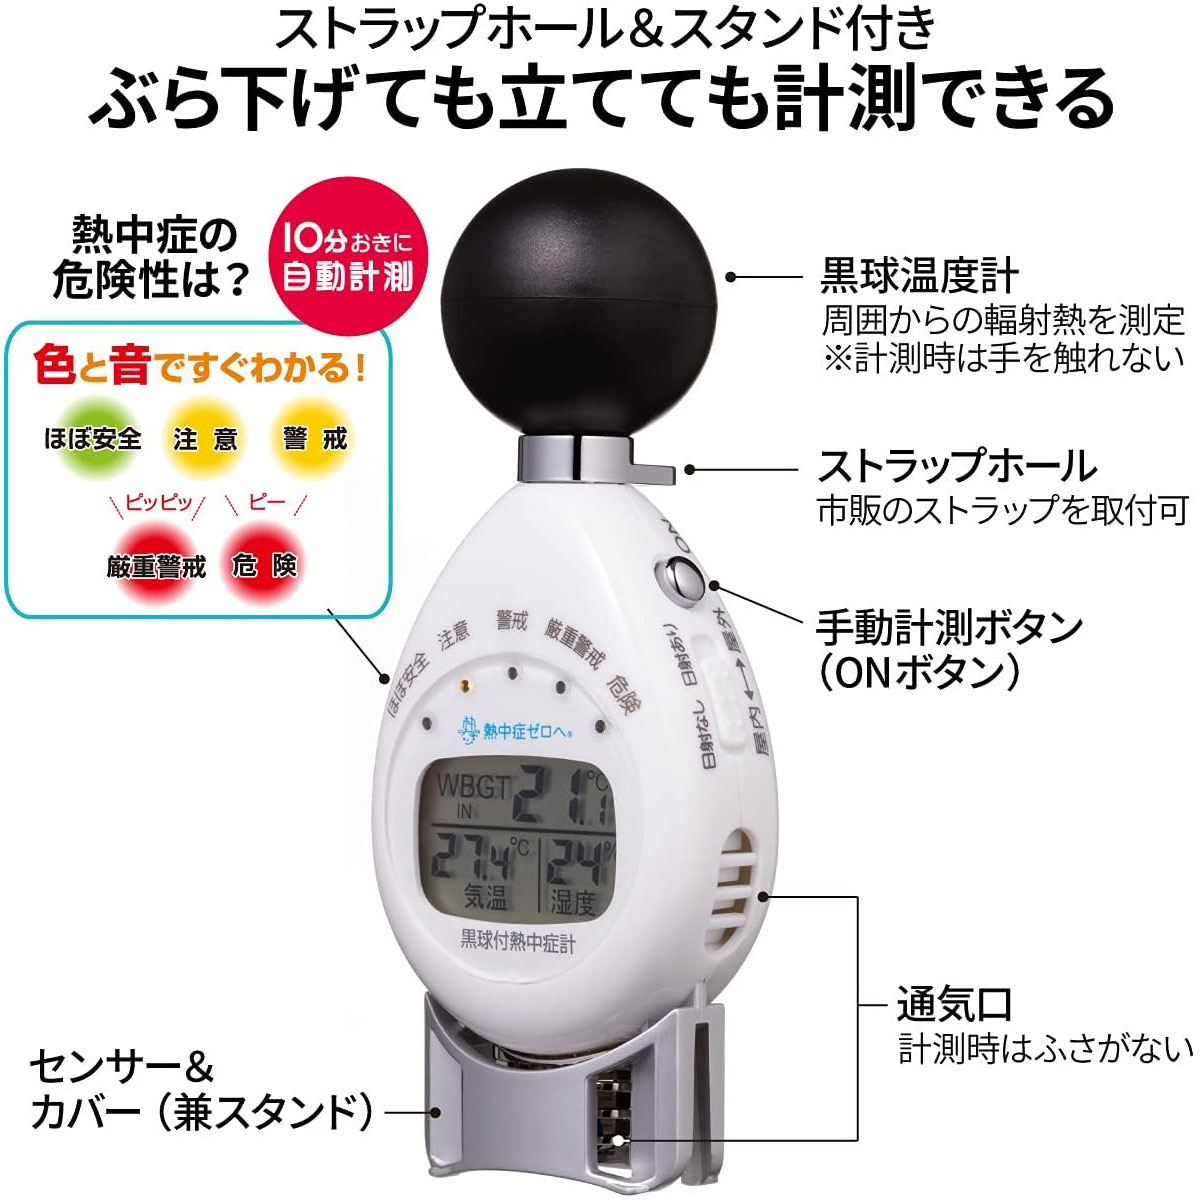 楽天市場計 熱中症計 黒球付熱中症計  携帯型 温度計 即納